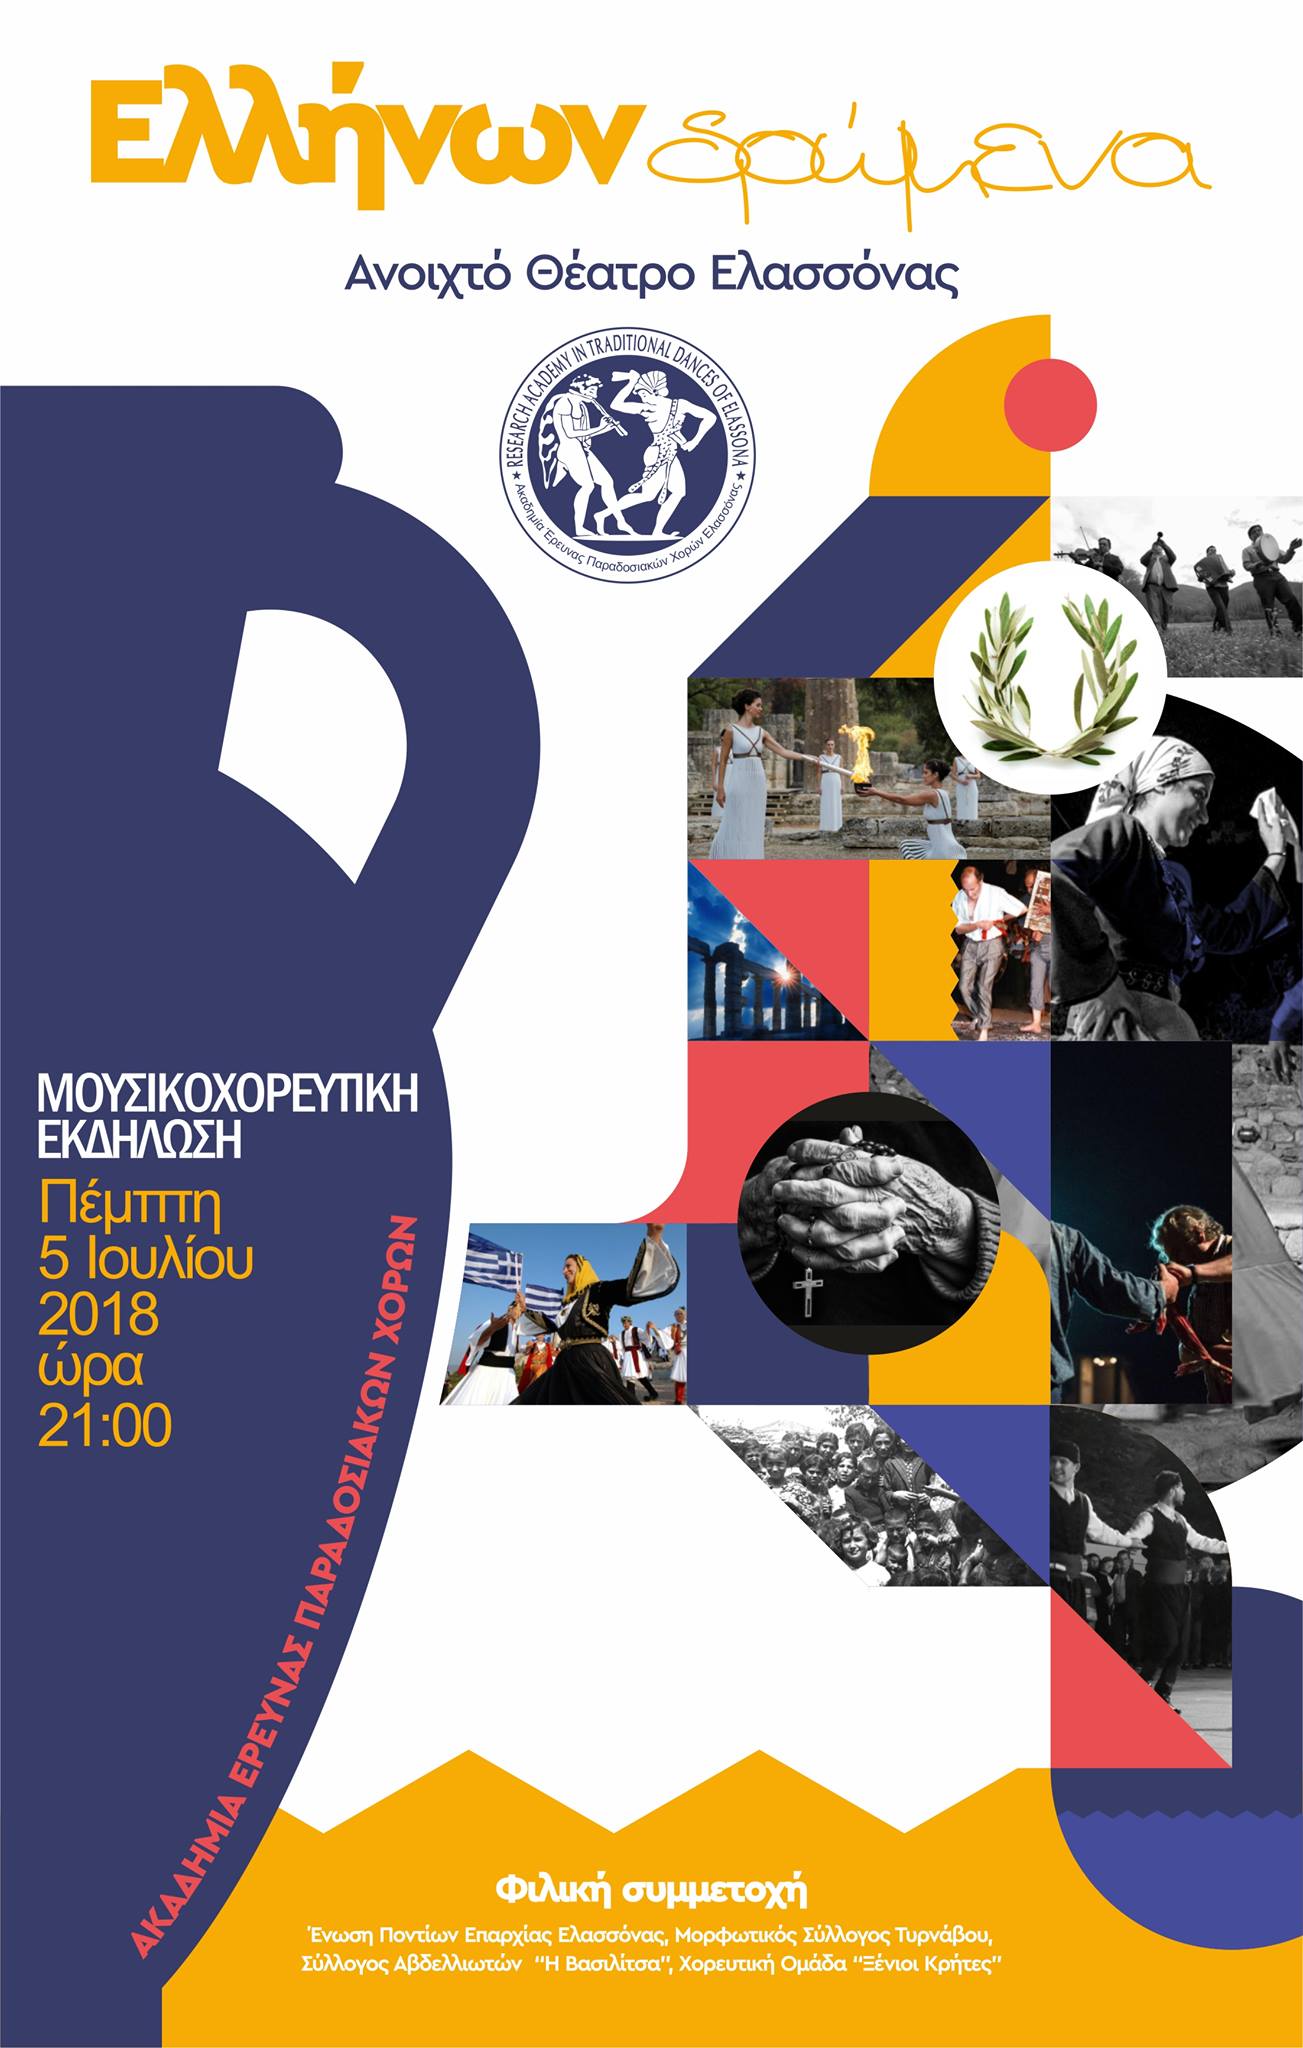 Μουσικοχορευτική εκδήλωση «Ελλήνων Δρώμενα» από την Ακαδημία Έρευνας Παραδοσιακών Χορών